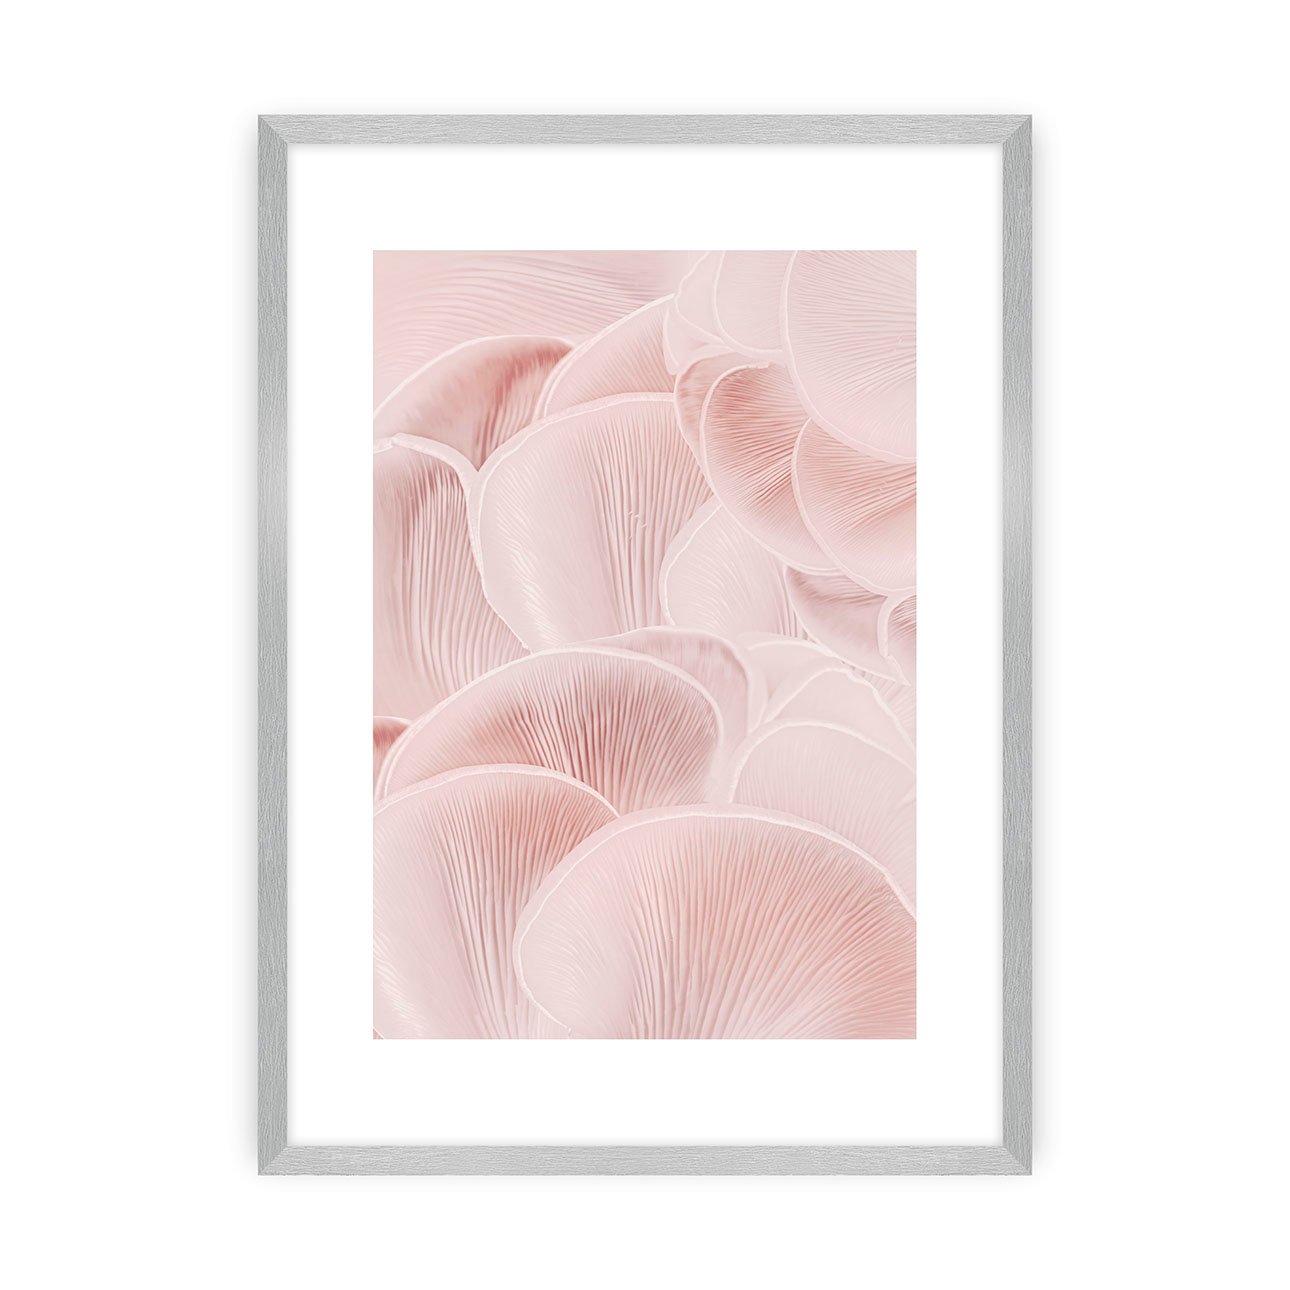 Dekoria Plakát Pastel Pink I, 30 x 40 cm, Zvolit rámek: Stříbrný